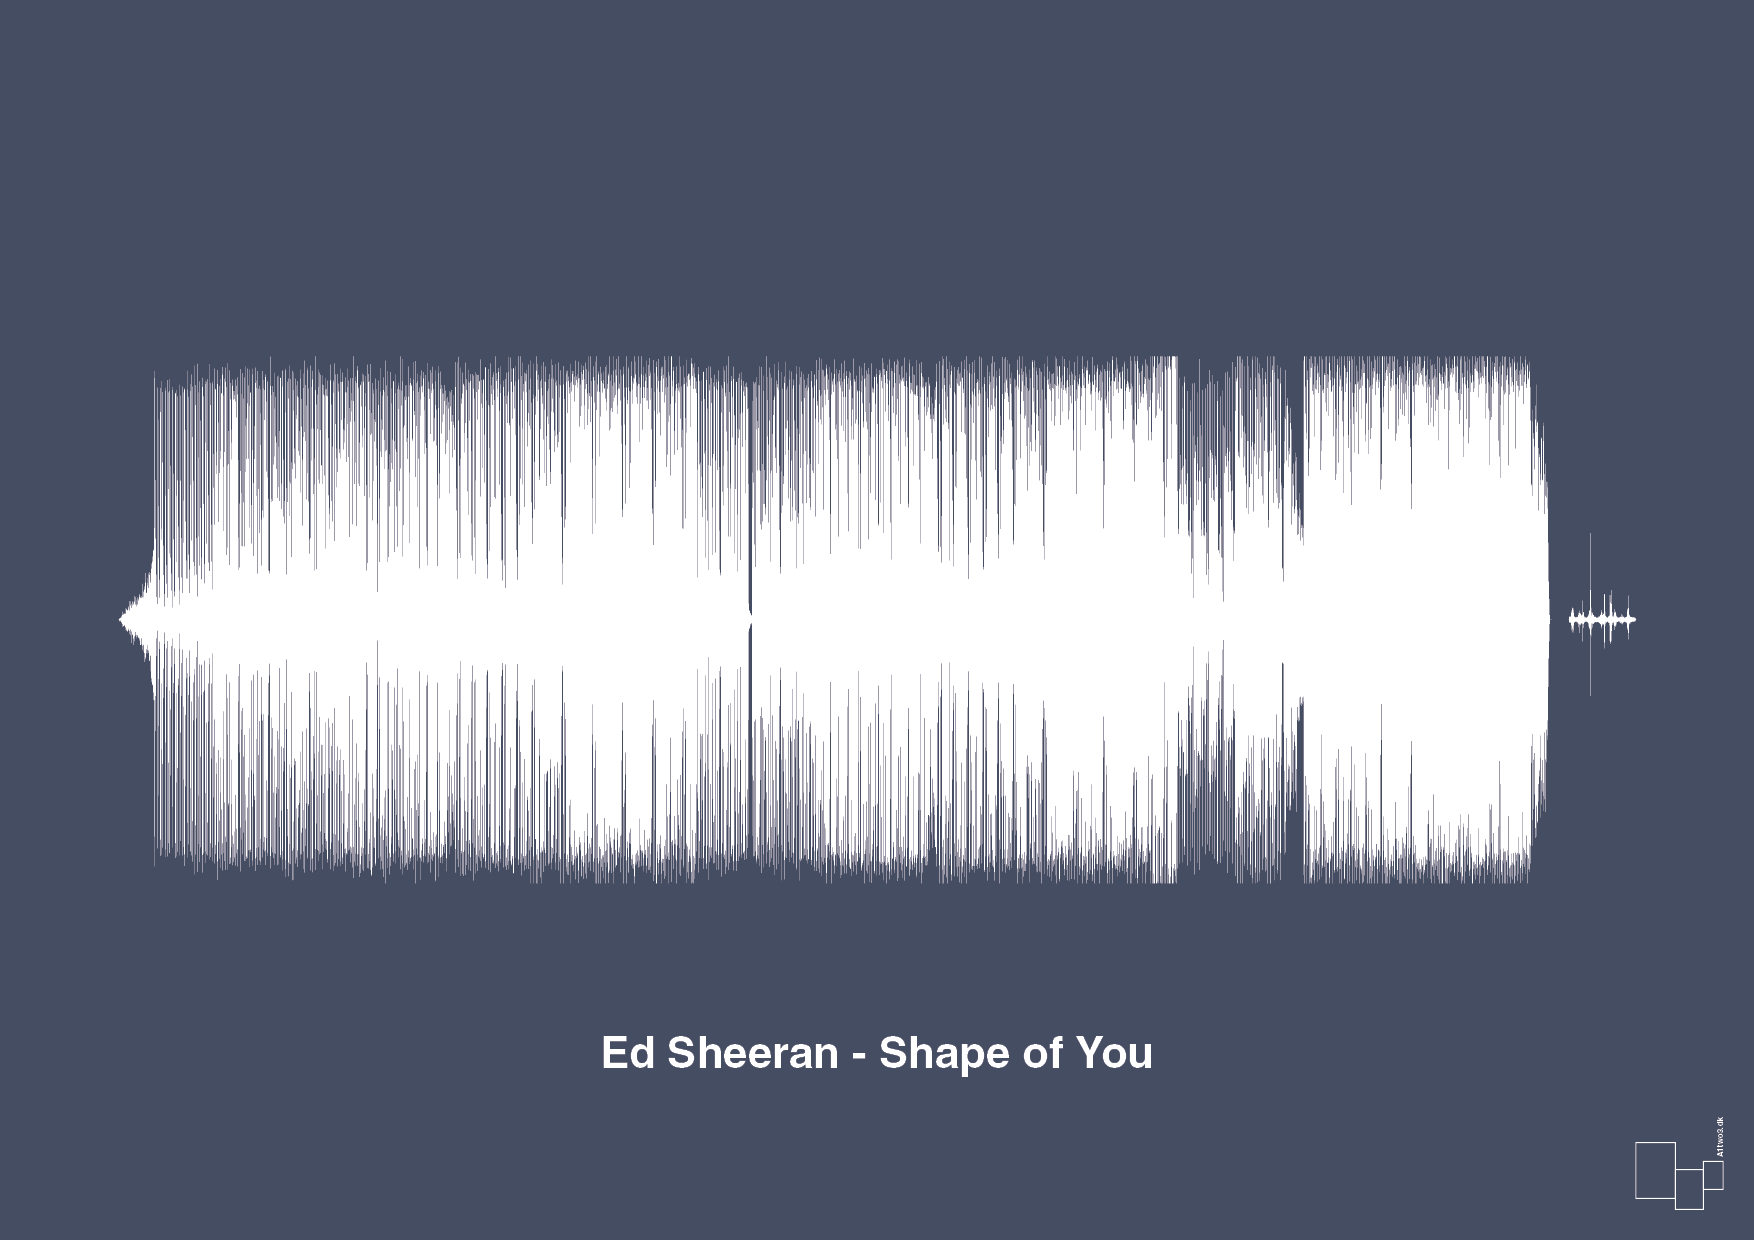 ed sheeran - shape of you - Plakat med Musik i Petrol